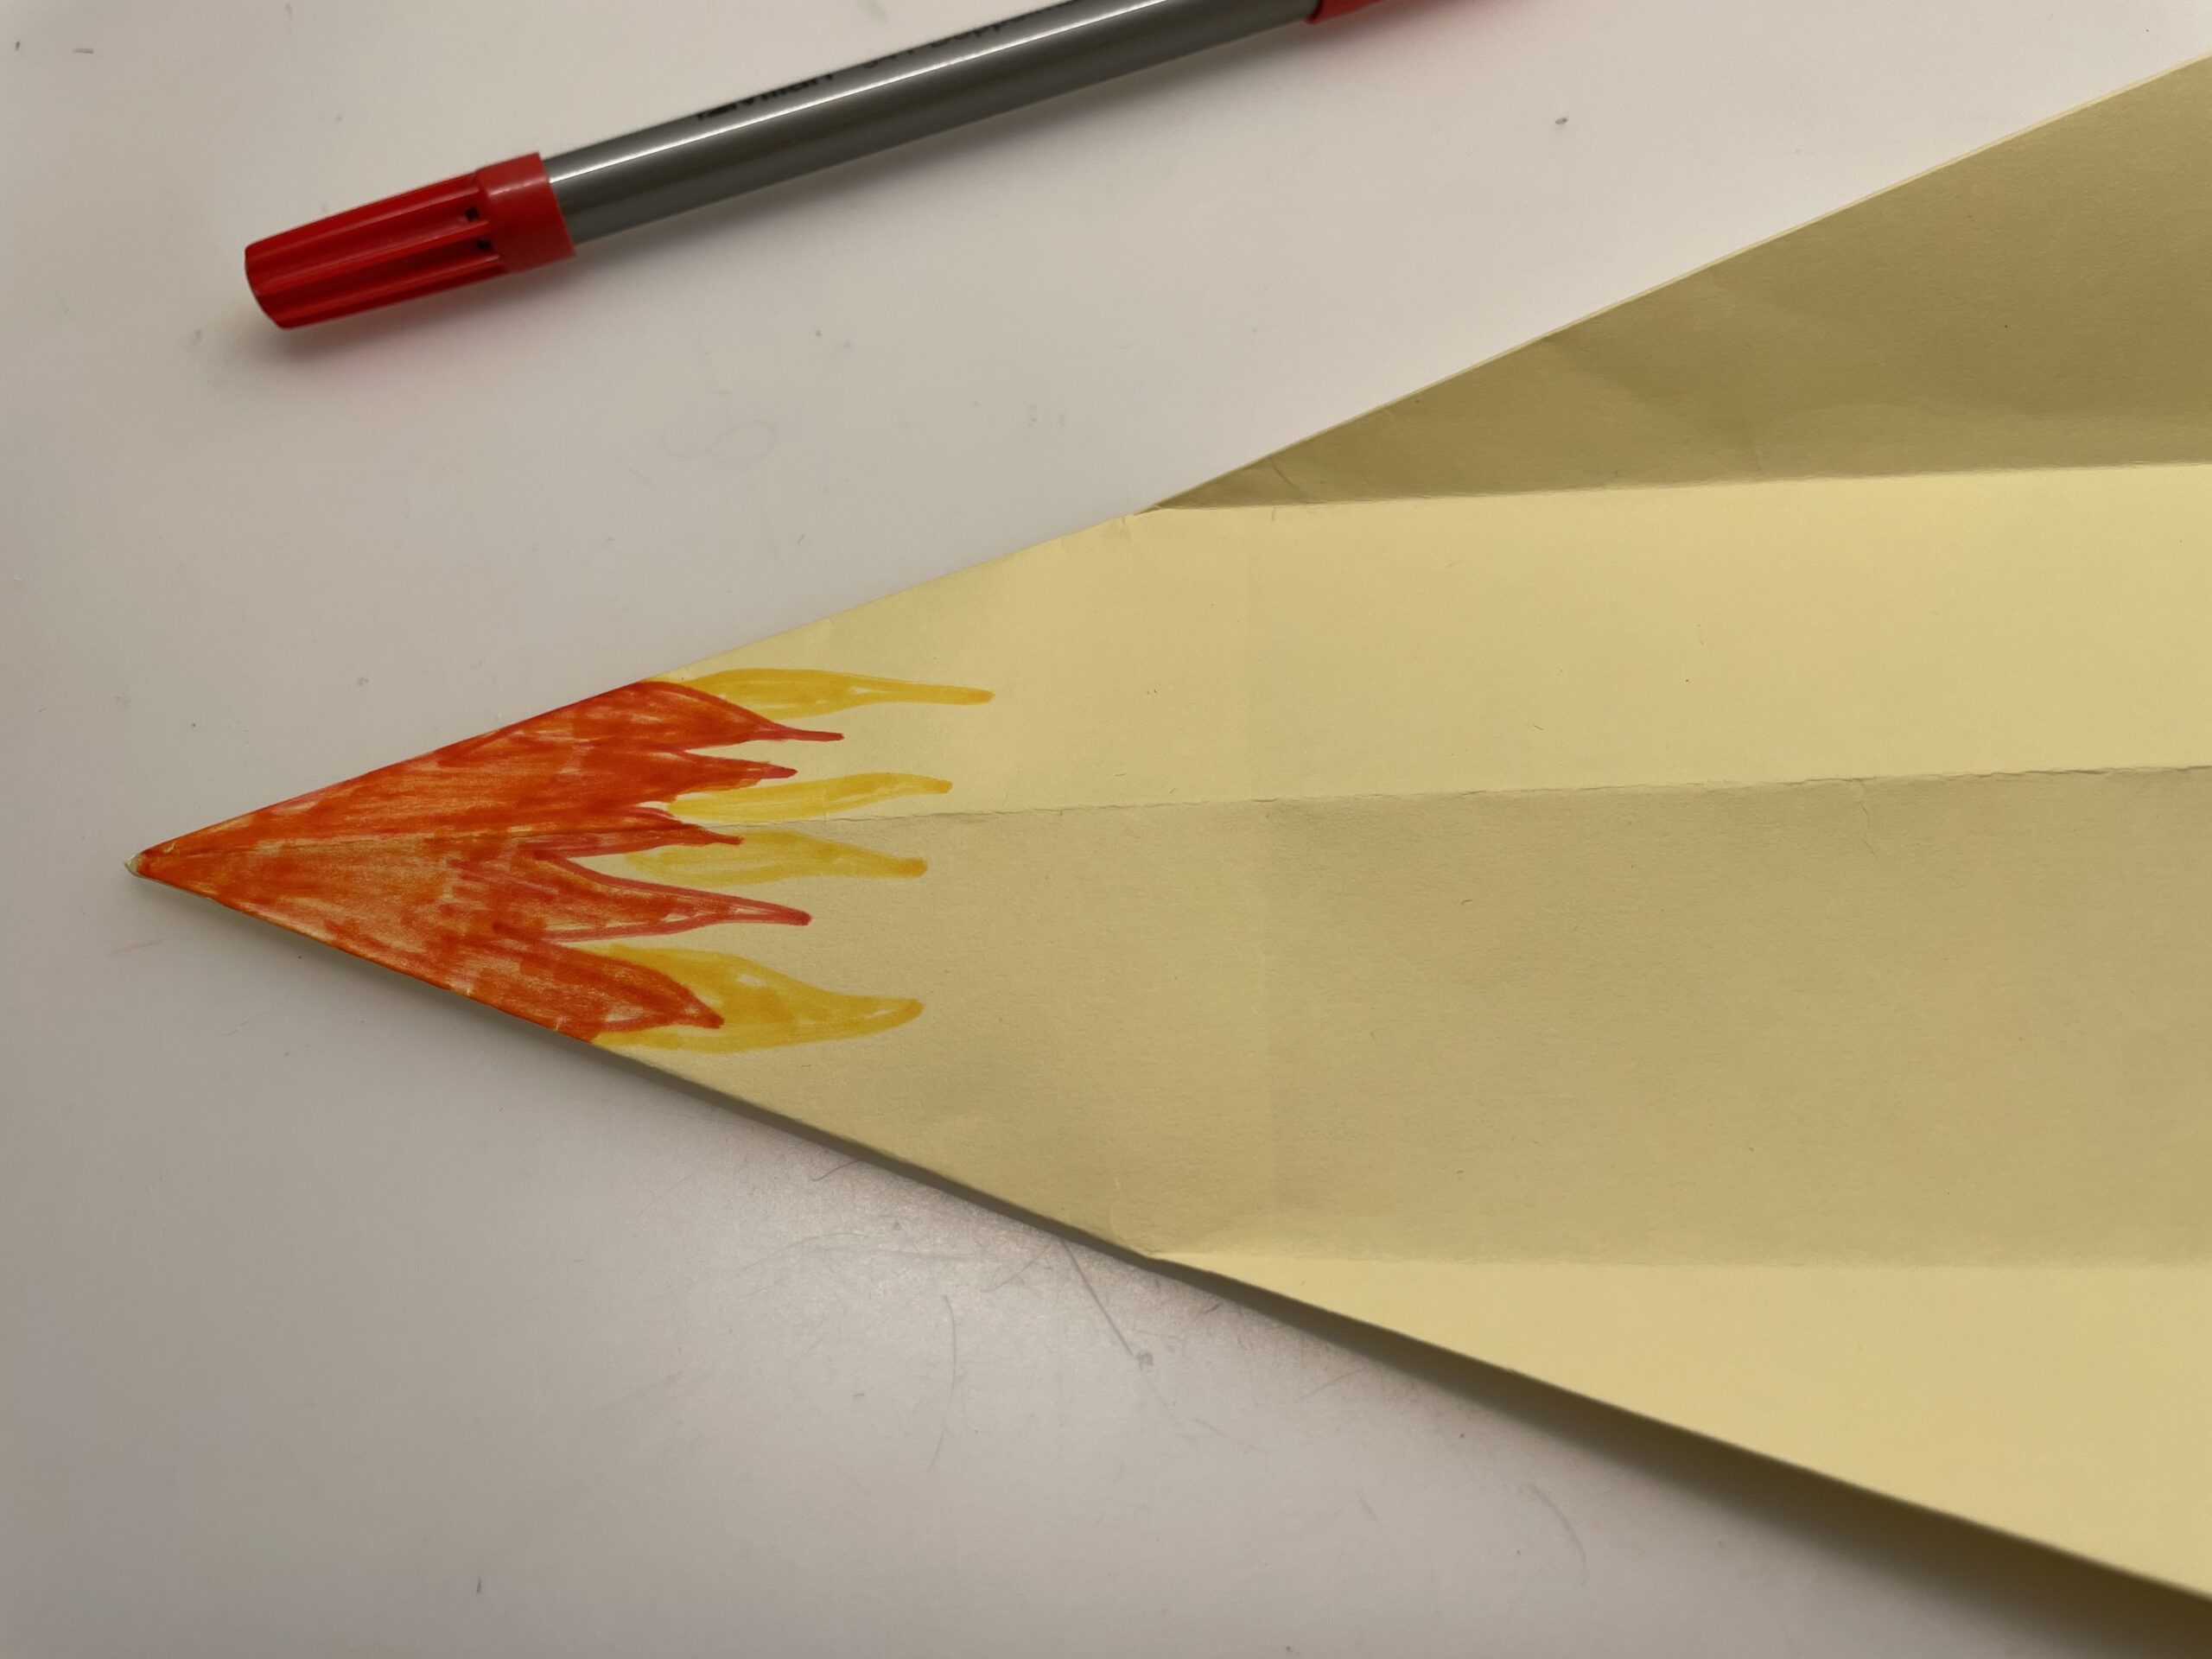 Bild zum Schritt 48 für das Bastel- und DIY-Abenteuer für Kinder: 'Malt nun erneut feurige Flammen auf.'